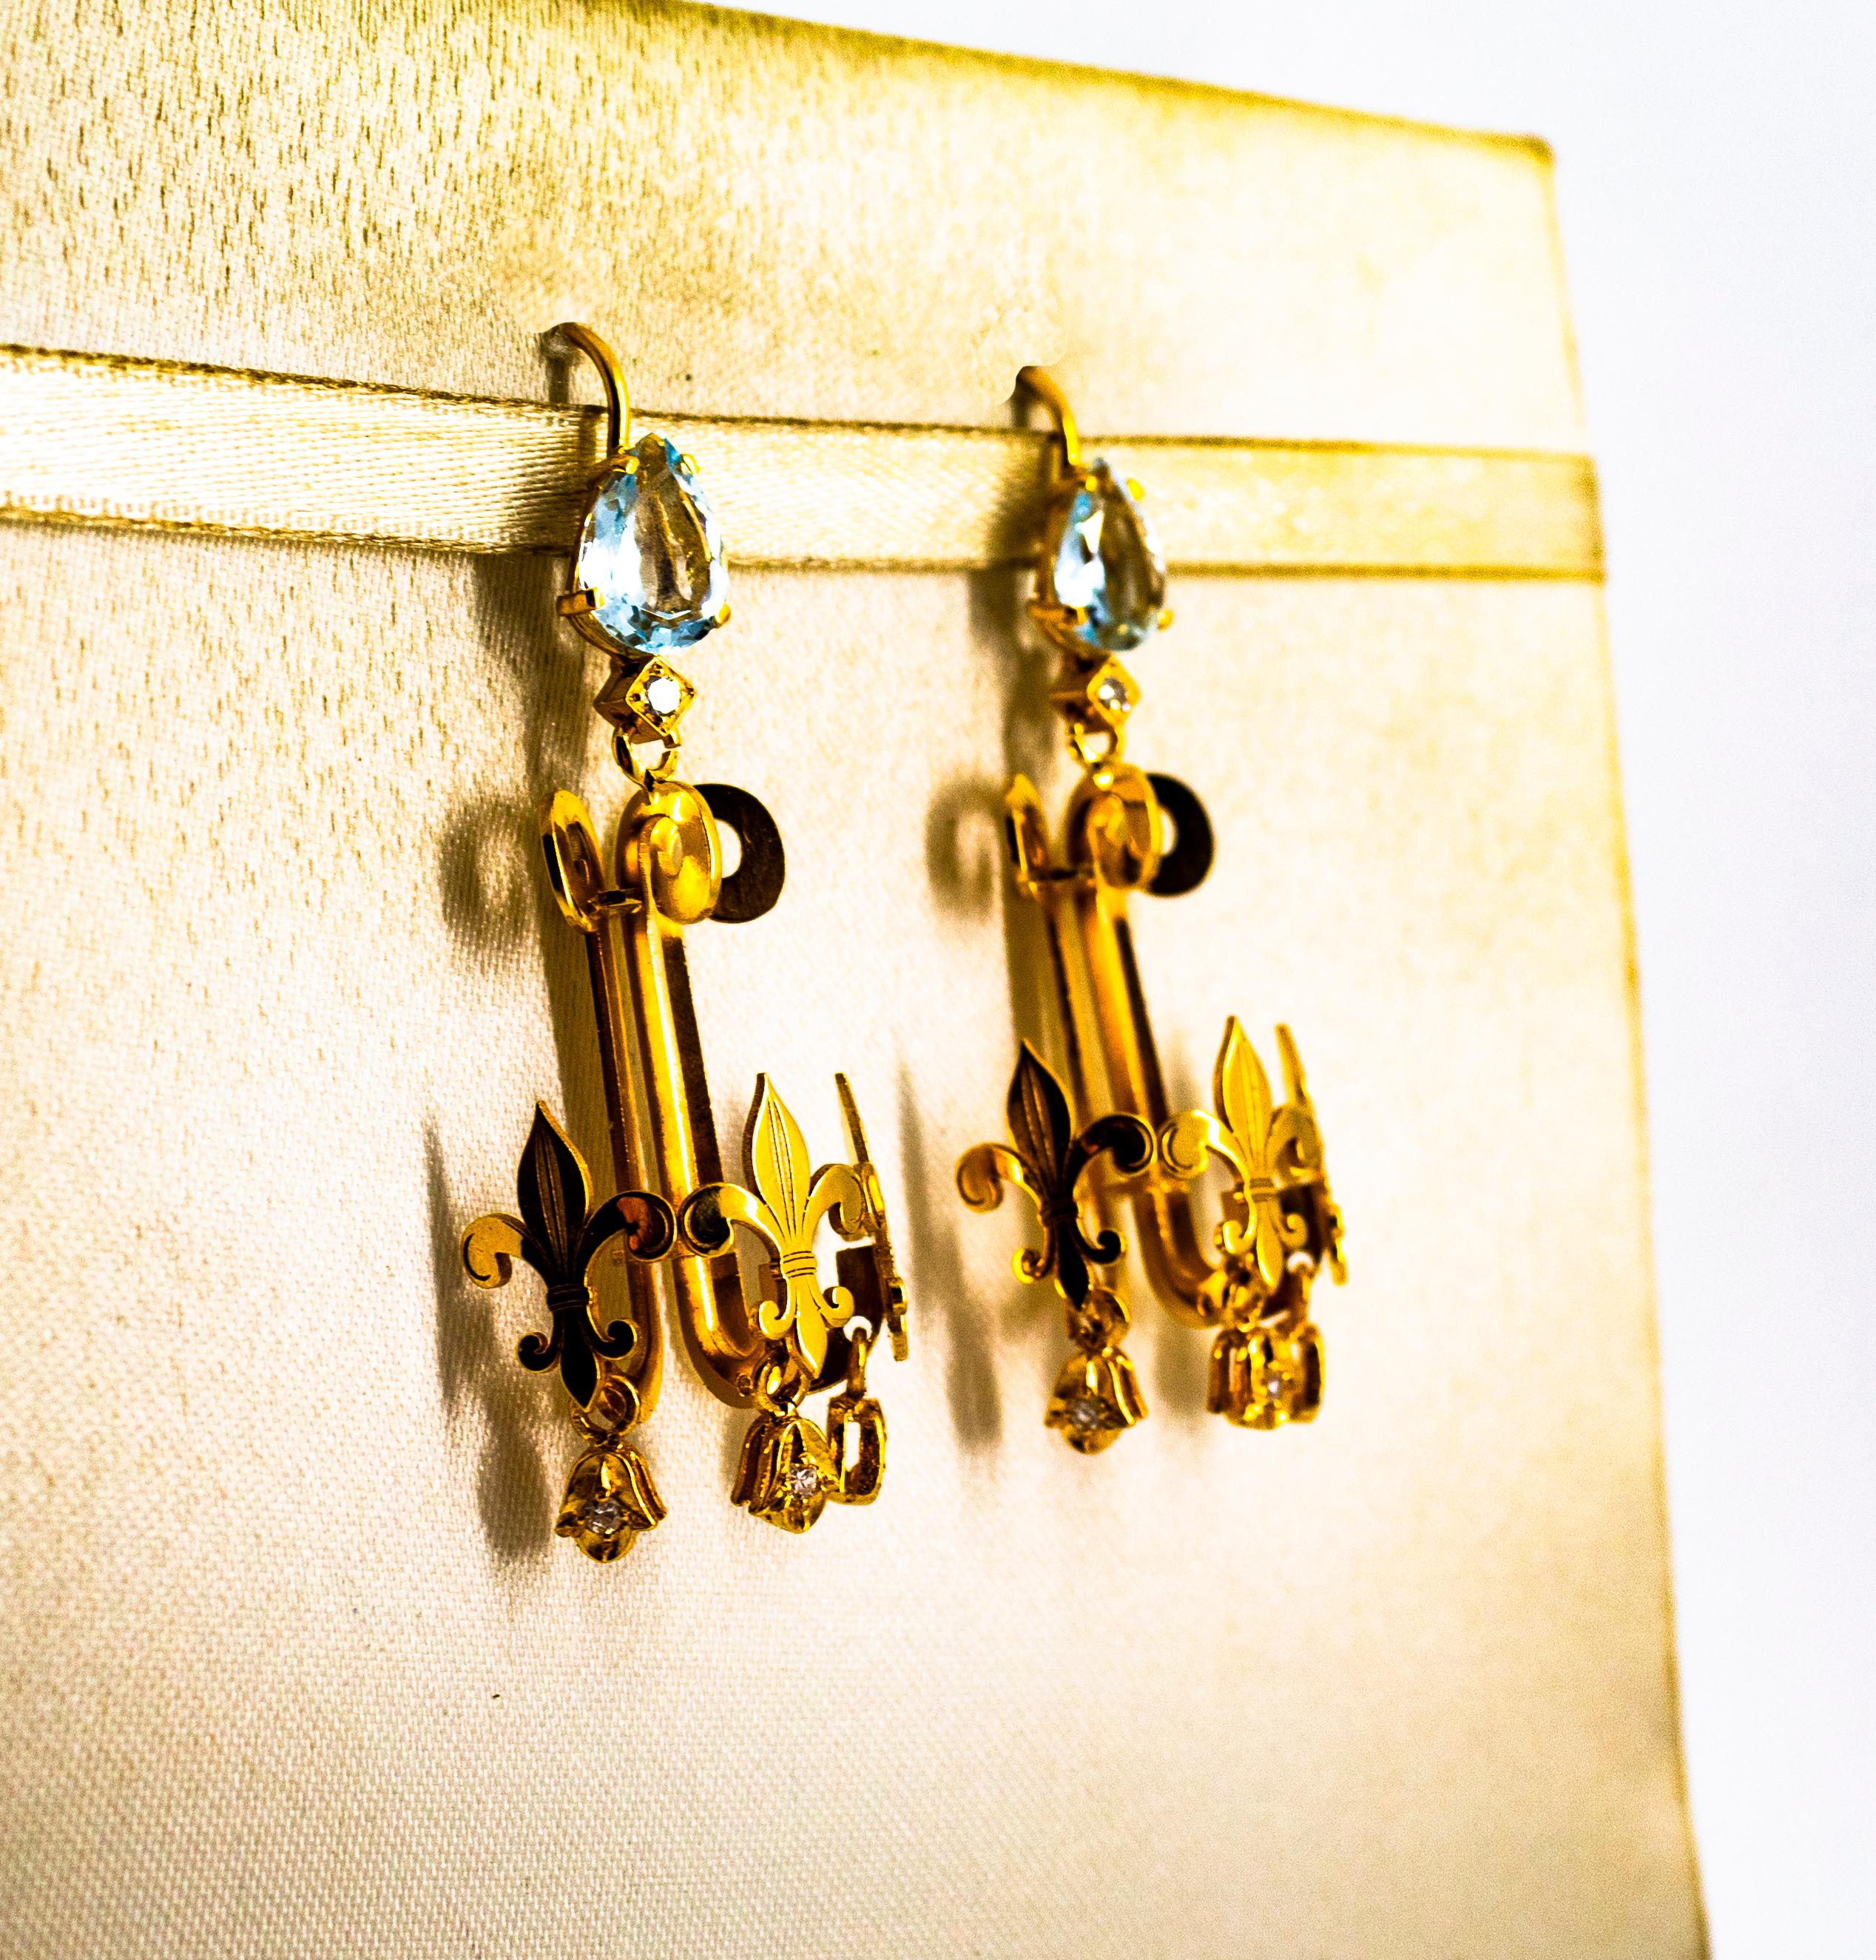 Diese Ohrstecker sind aus 14K Gelbgold gefertigt.
Diese Ohrringe haben 0,16 Karat weiße moderne Diamanten im Rundschliff.
Diese Ohrringe haben auch 2,50 Karat Aquamarine.
Diese Ohrringe sind auch mit Smaragden erhältlich.
Alle unsere Ohrringe haben